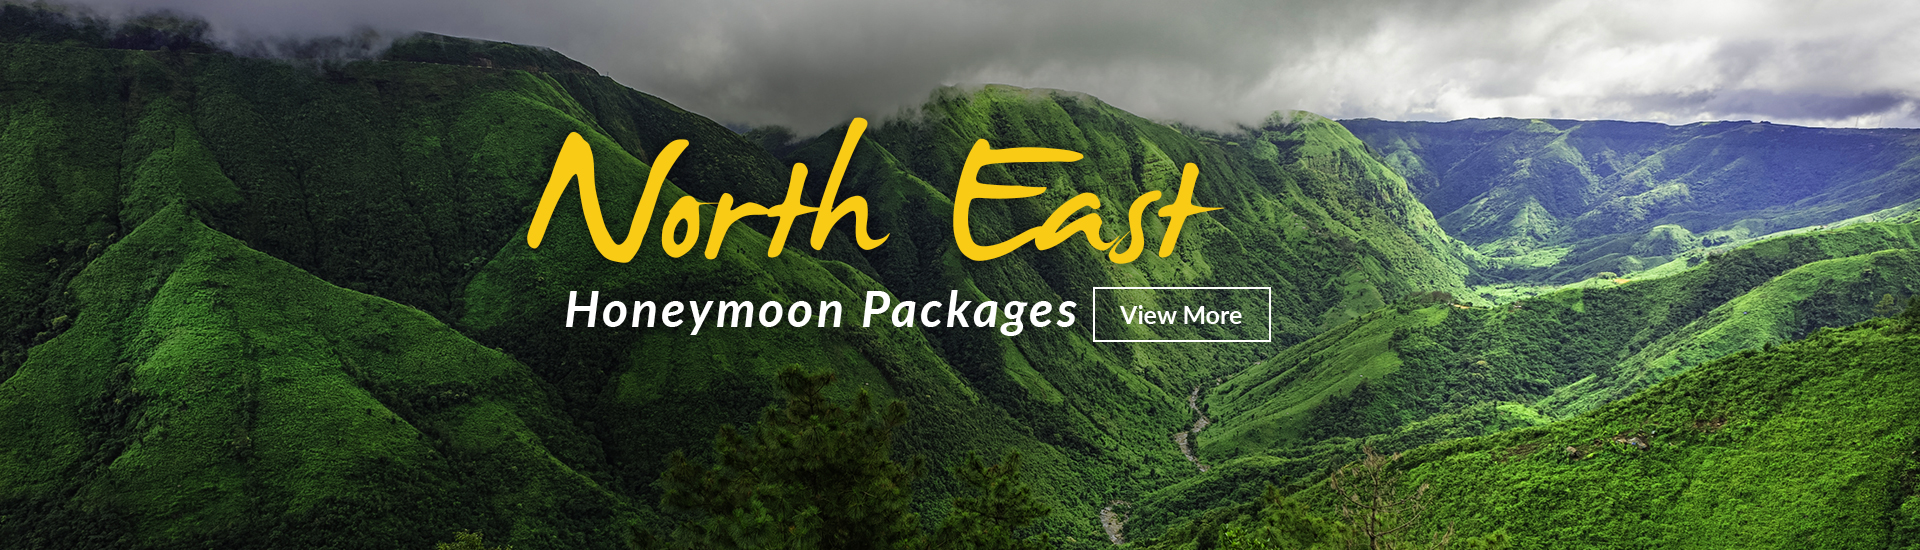 North East Honeymoon Packages